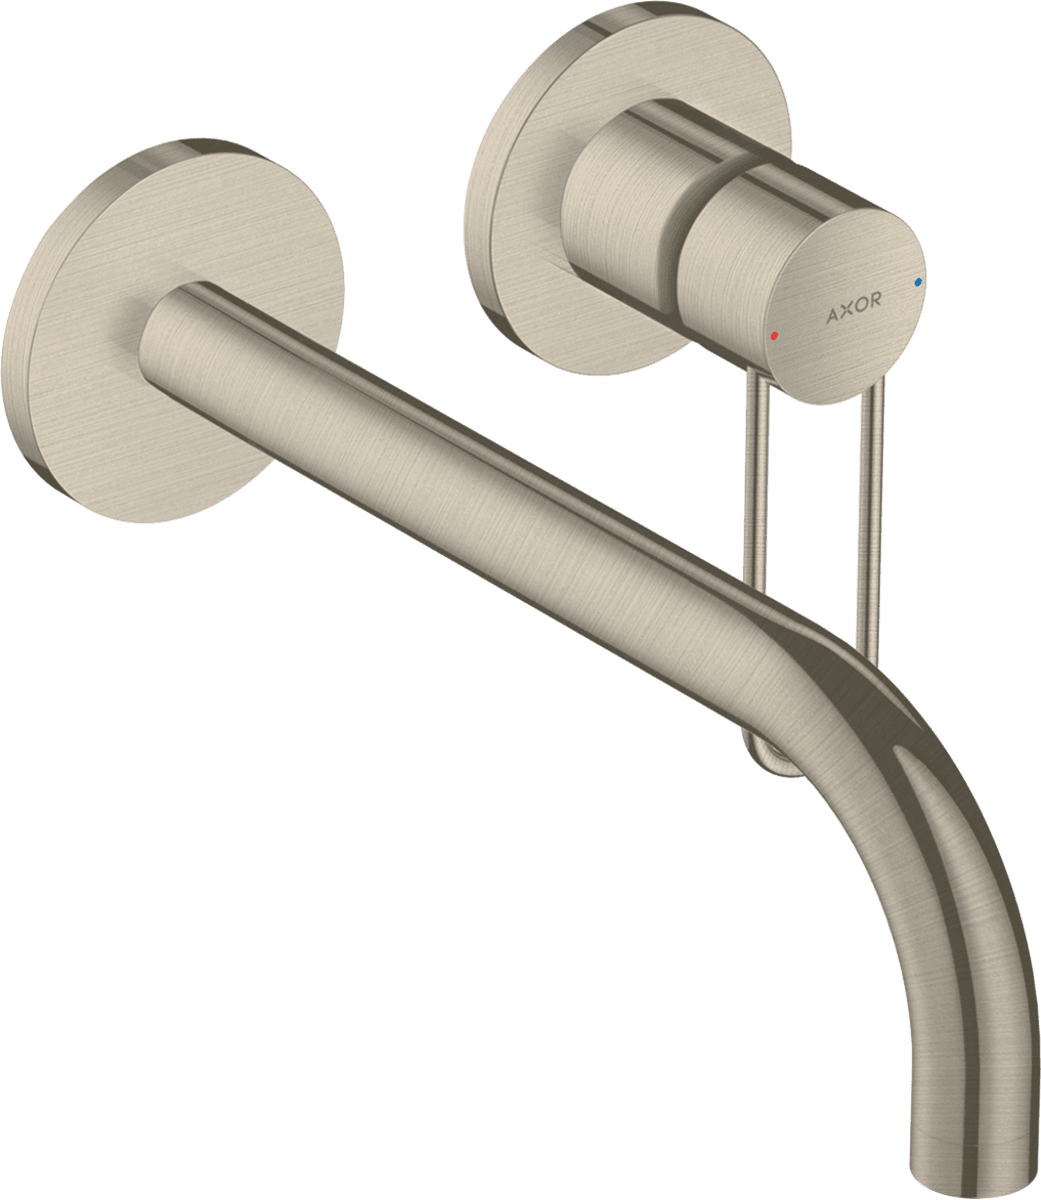 εικόνα του HANSGROHE AXOR Uno Single lever basin mixer for concealed installation wall-mounted with loop handle and spout 225 mm #38122820 - Brushed Nickel